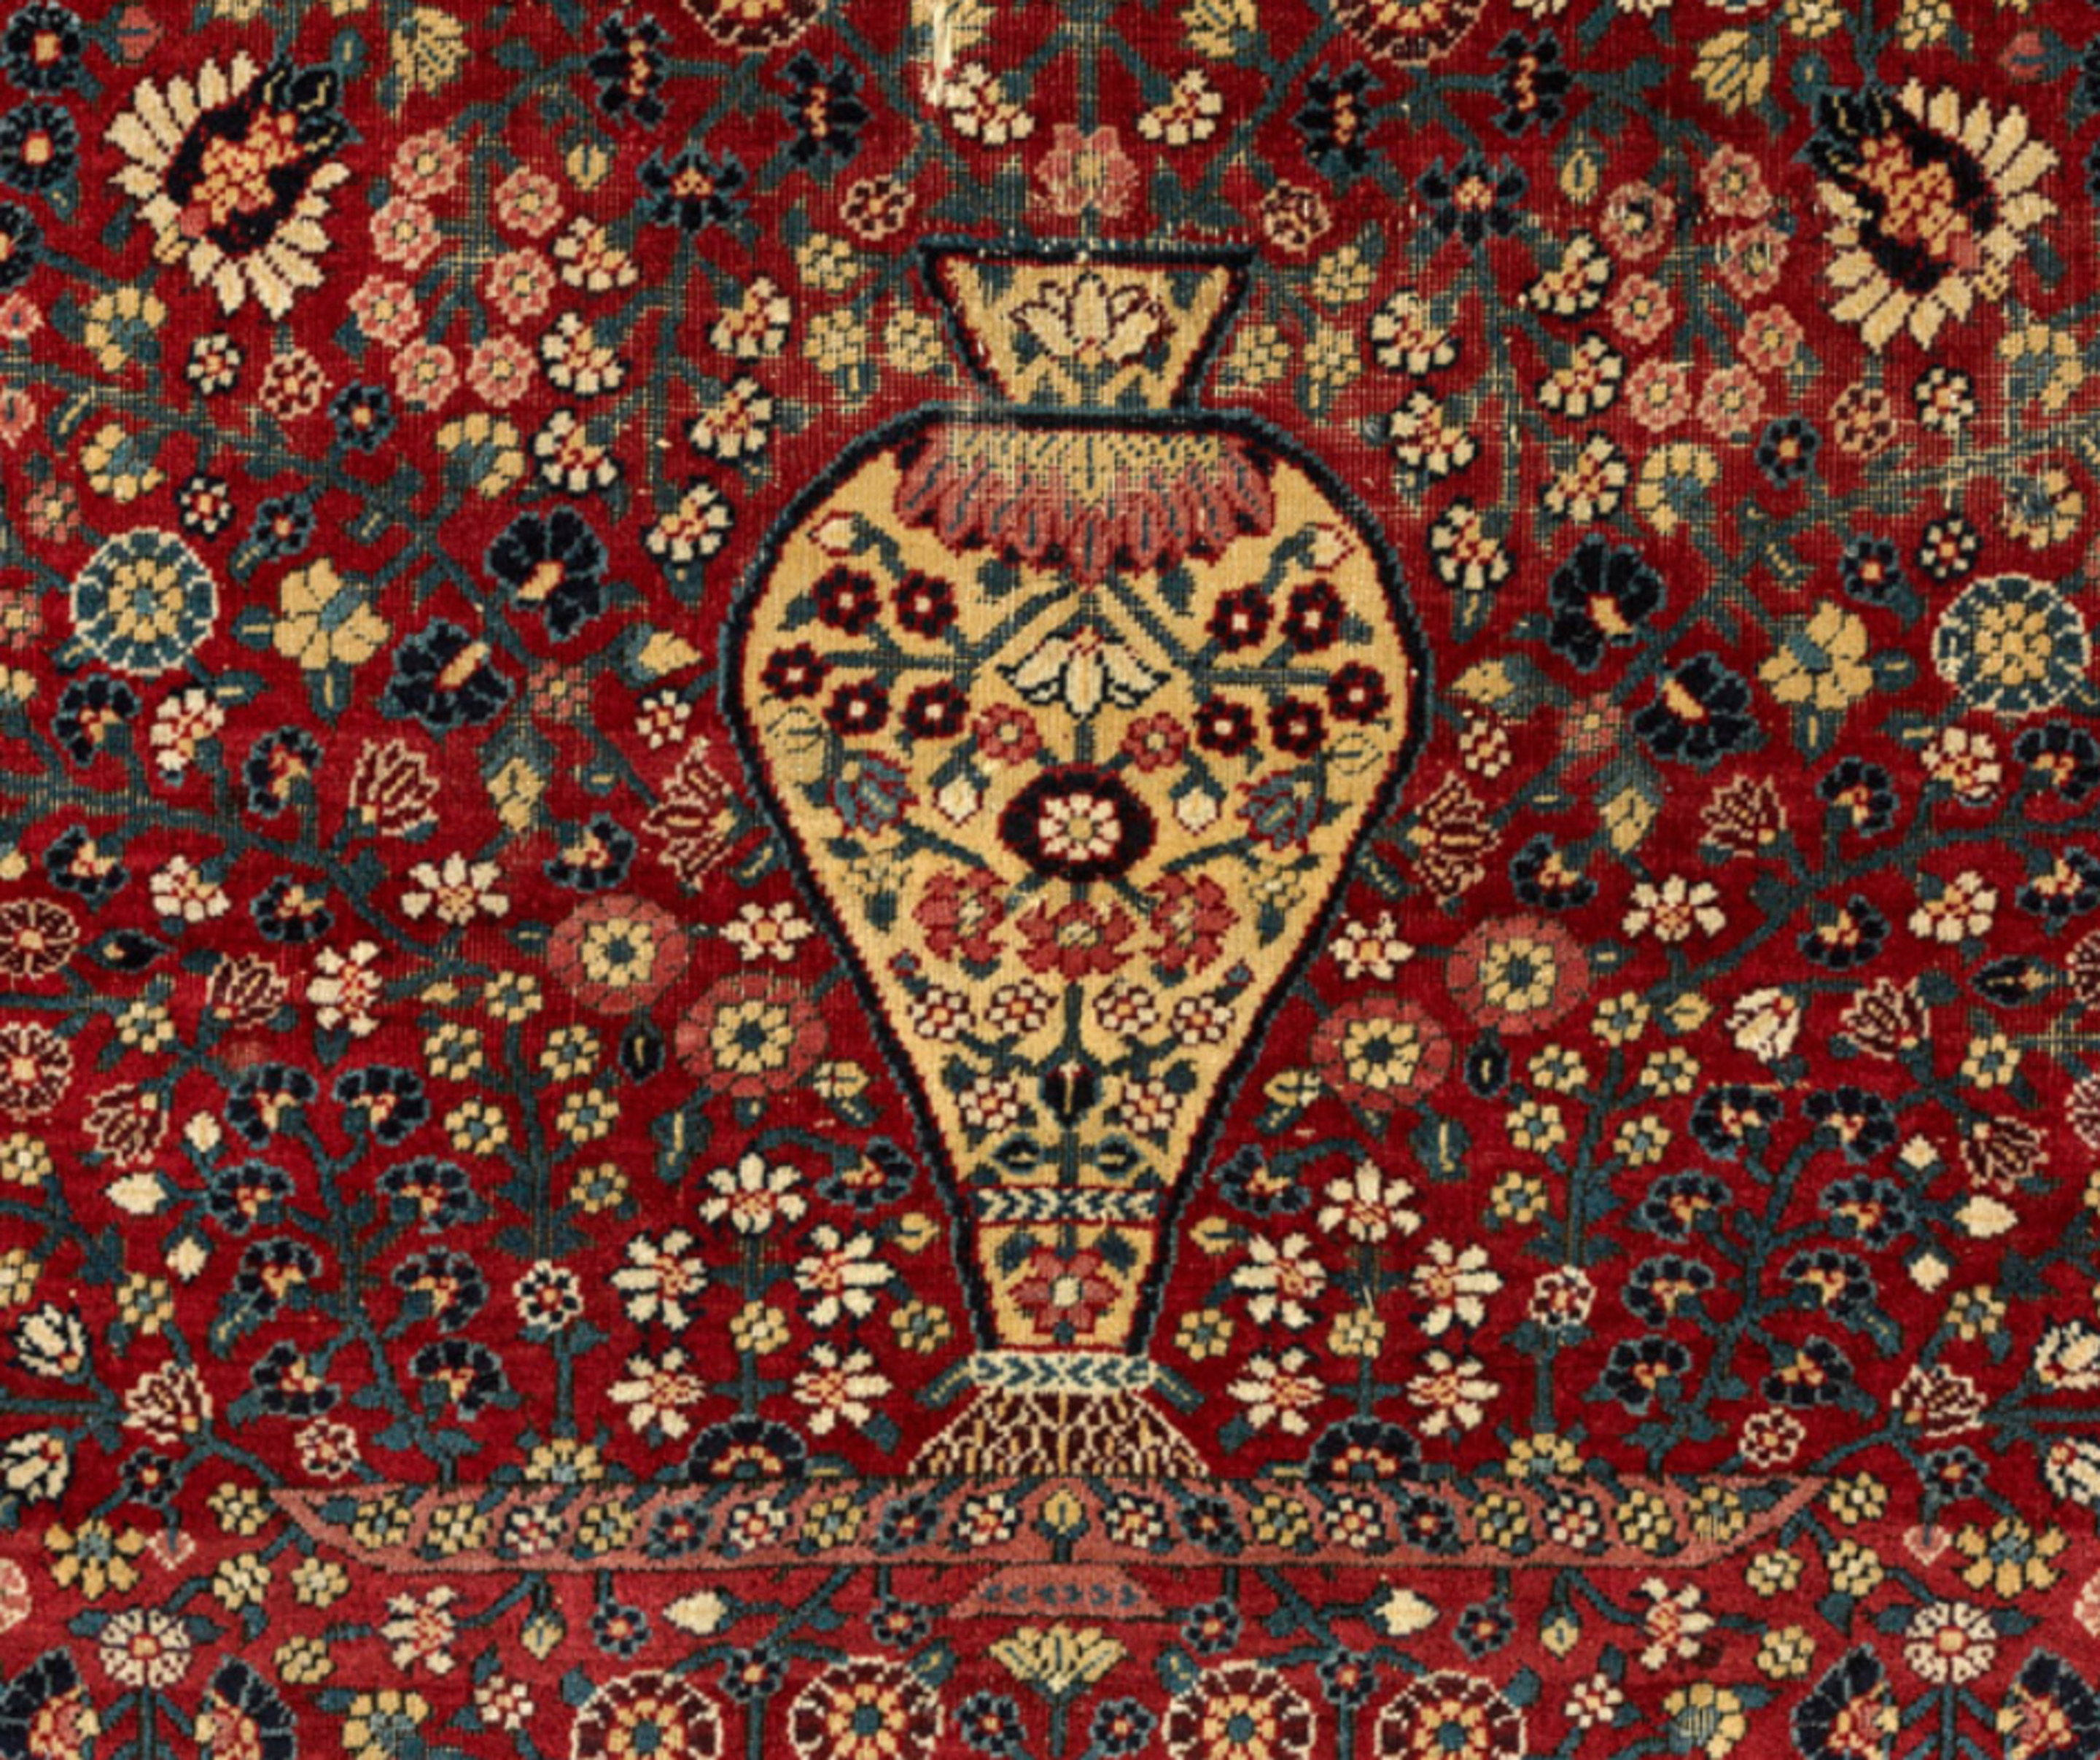 Détail tapis de prière dit Millefleurs, Cachemire, 1ère moitié du 18e siècle. MT 29465. Achat Dubernard, 1910. © © Lyon, musée des Tissus - Sylvain Pretto